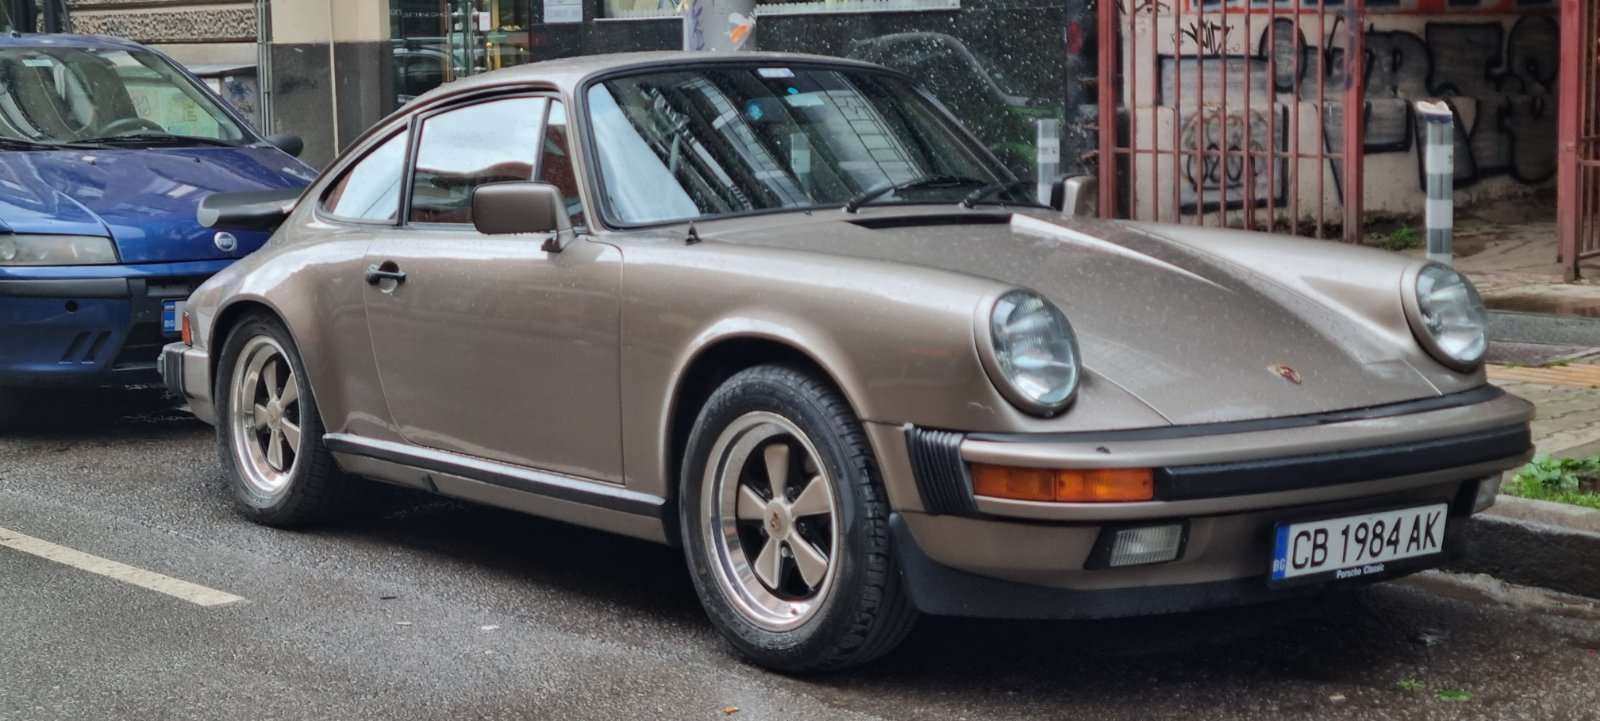 Porsche vechi puzzle online din fotografie